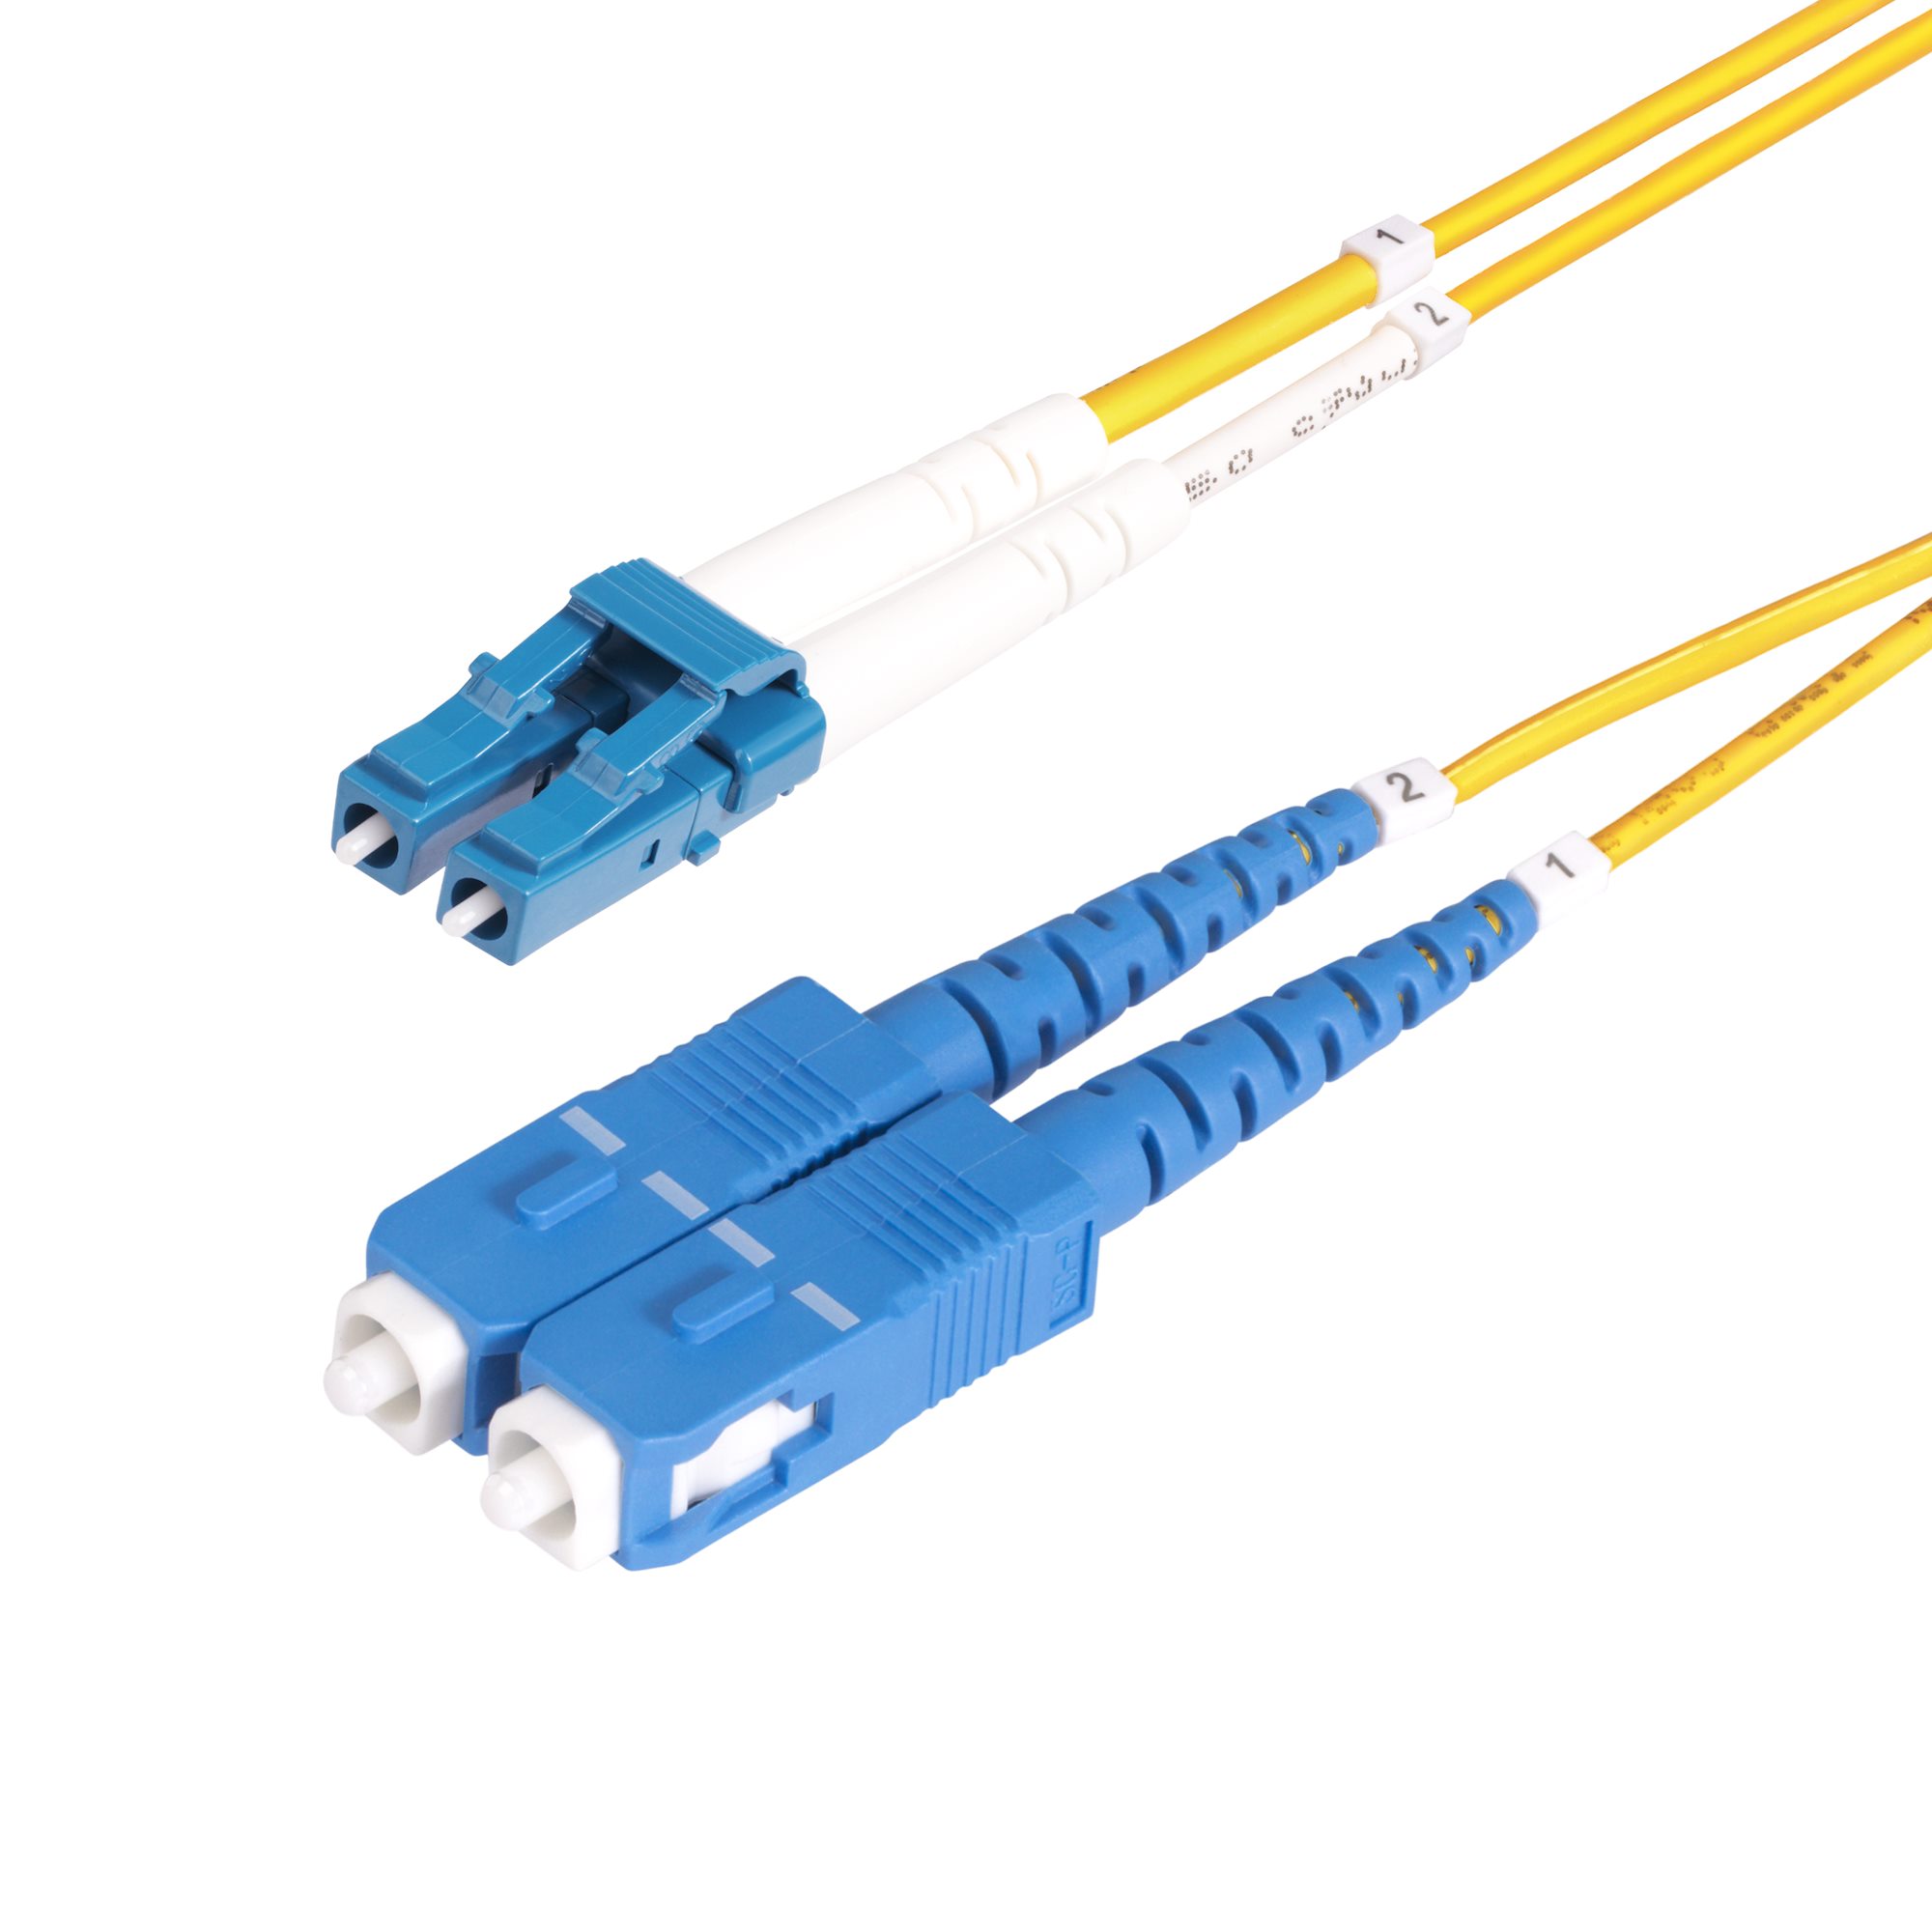 SMLCSC-OS2-50M Cable De Fibra Optica Lc A Sc Upc  Os2 Monomodo De 30M UPC 0065030903370